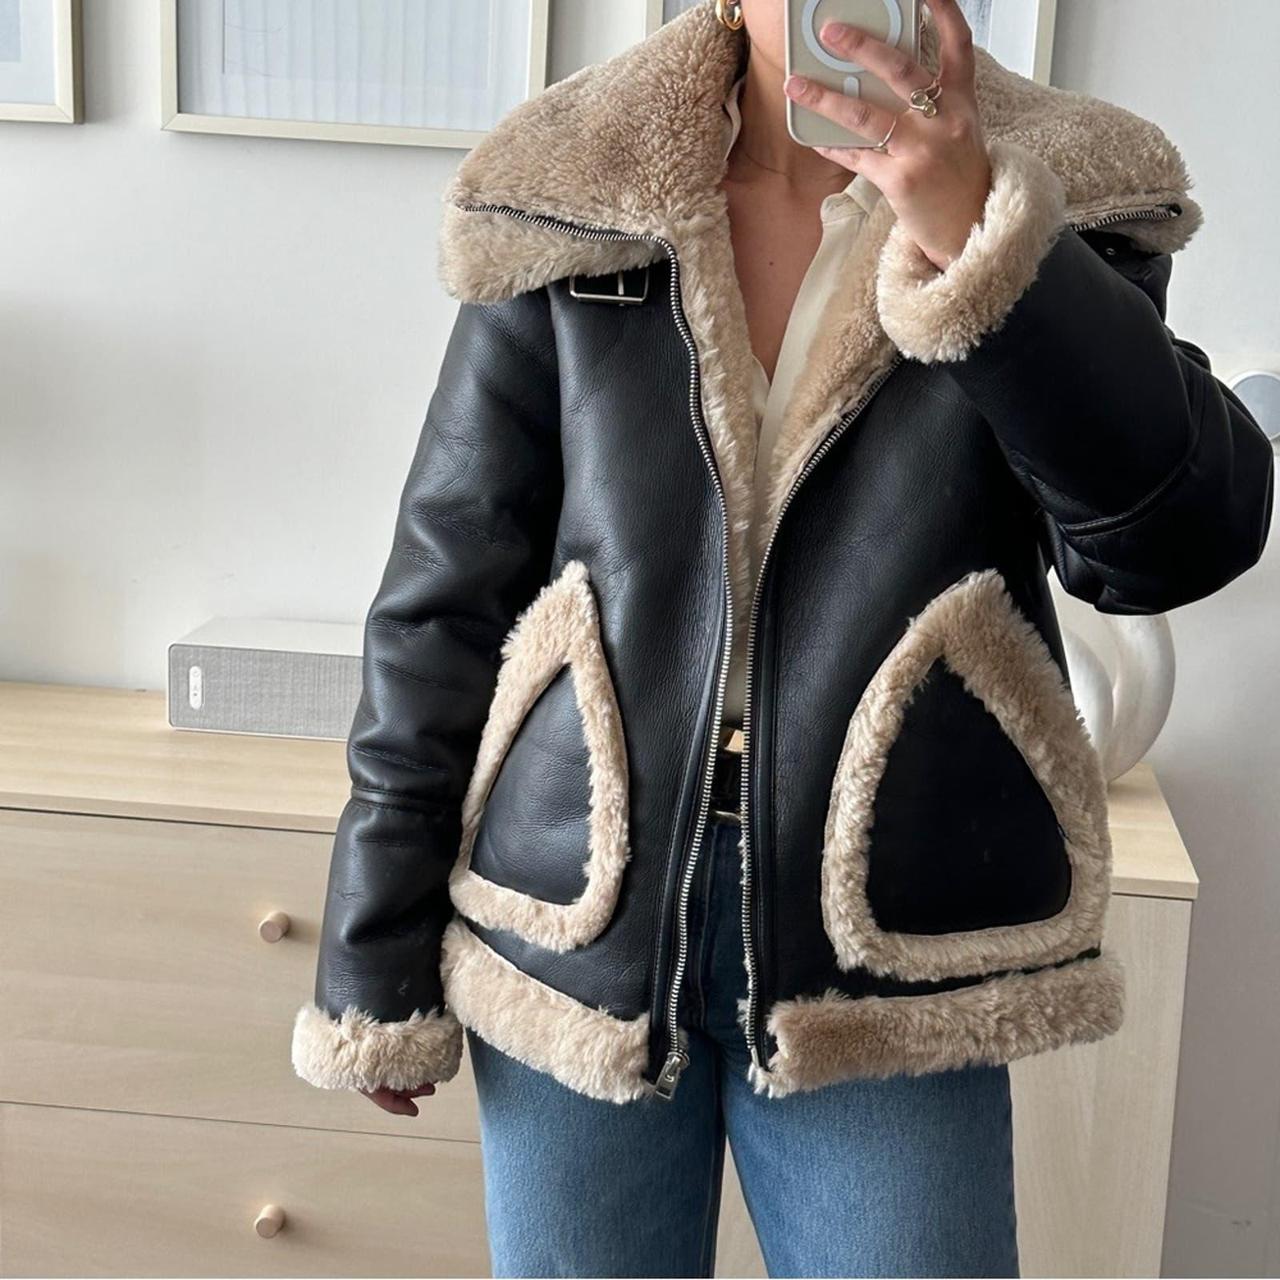 Topshop faux fur coat Stunning coat Size 4 #topsjop - Depop